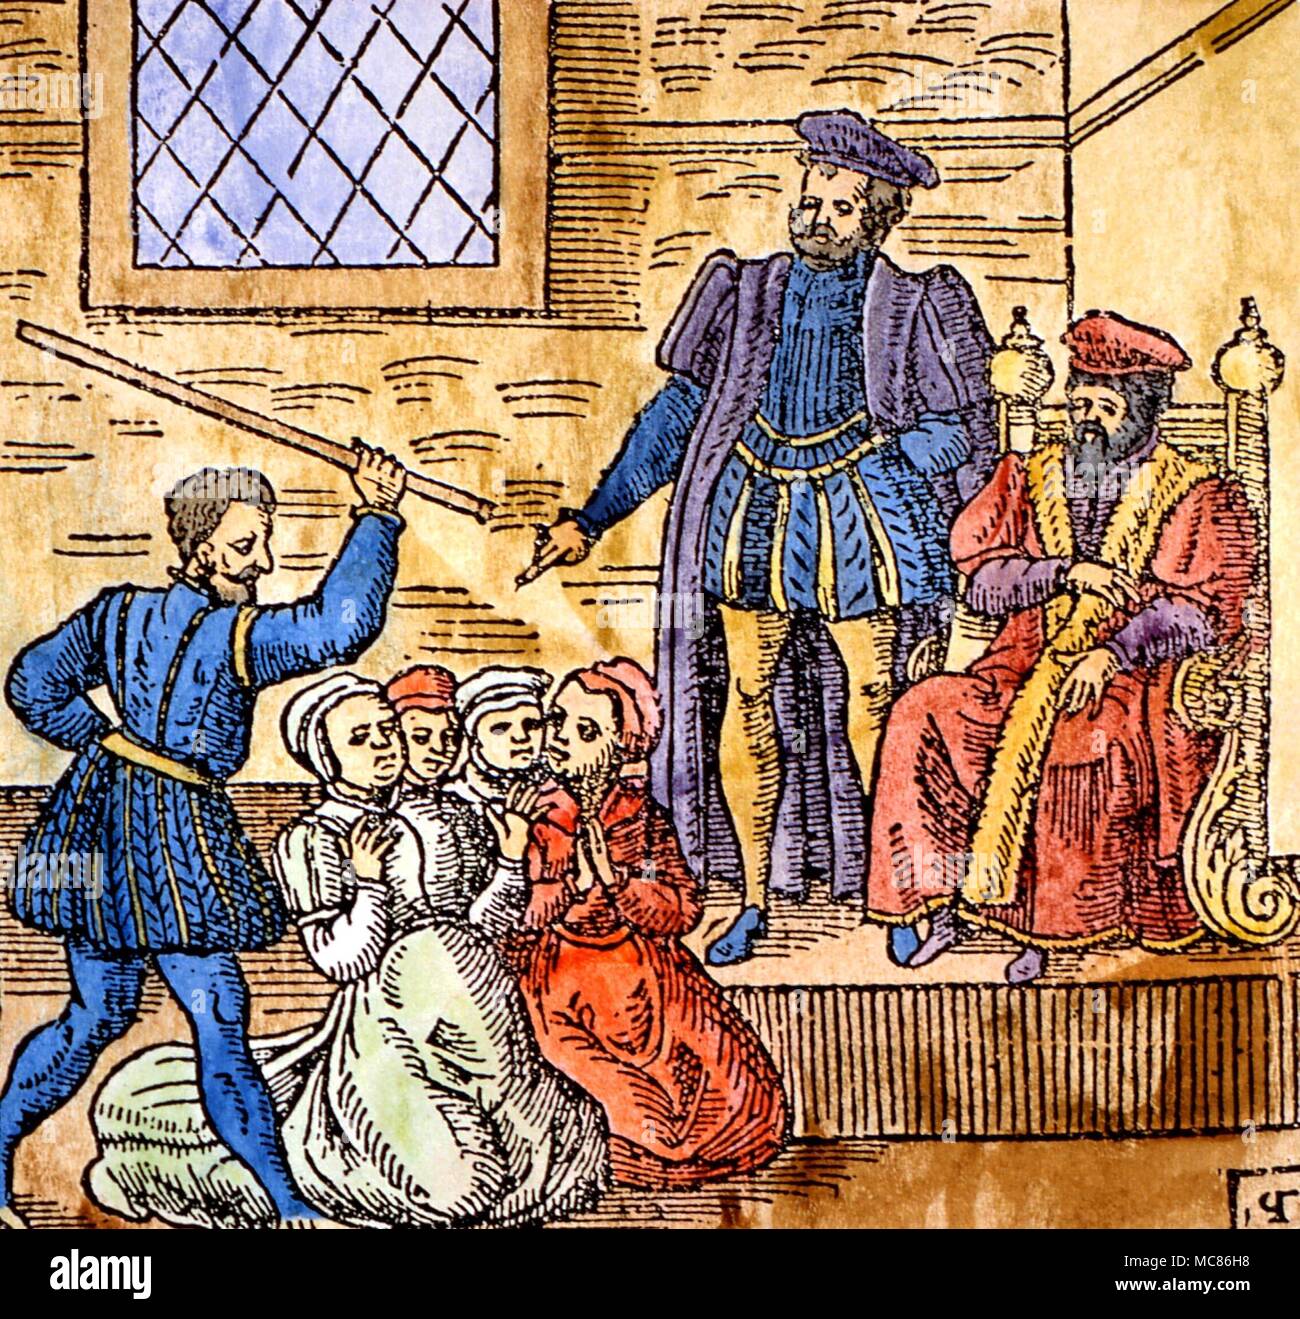 La torture La Sorcellerie Woodcut montrant le roi Jacques VI d'Écosse, futur Jacques I d'Angleterre, de la supervision de la torture des sorcières à Édimbourg, vers 1590. À partir de l'édition 1591 de 'Newes d'Écosse' Banque D'Images